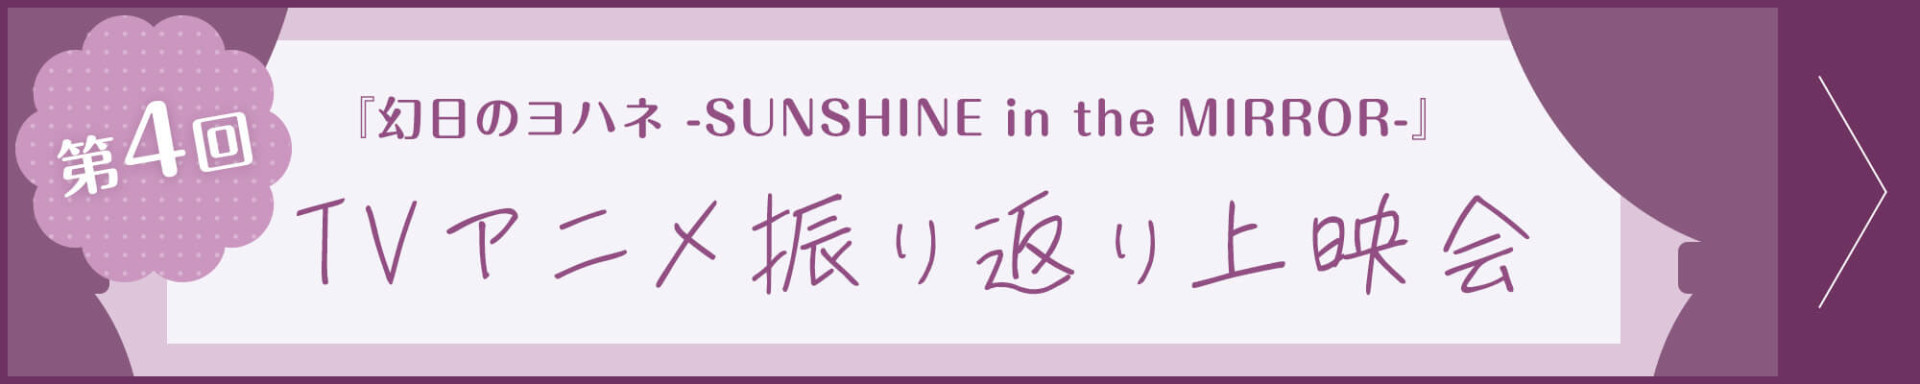 第4回『幻日のヨハネ -SUNSHINE in the MIRROR-』TVアニメ振り返り上映会